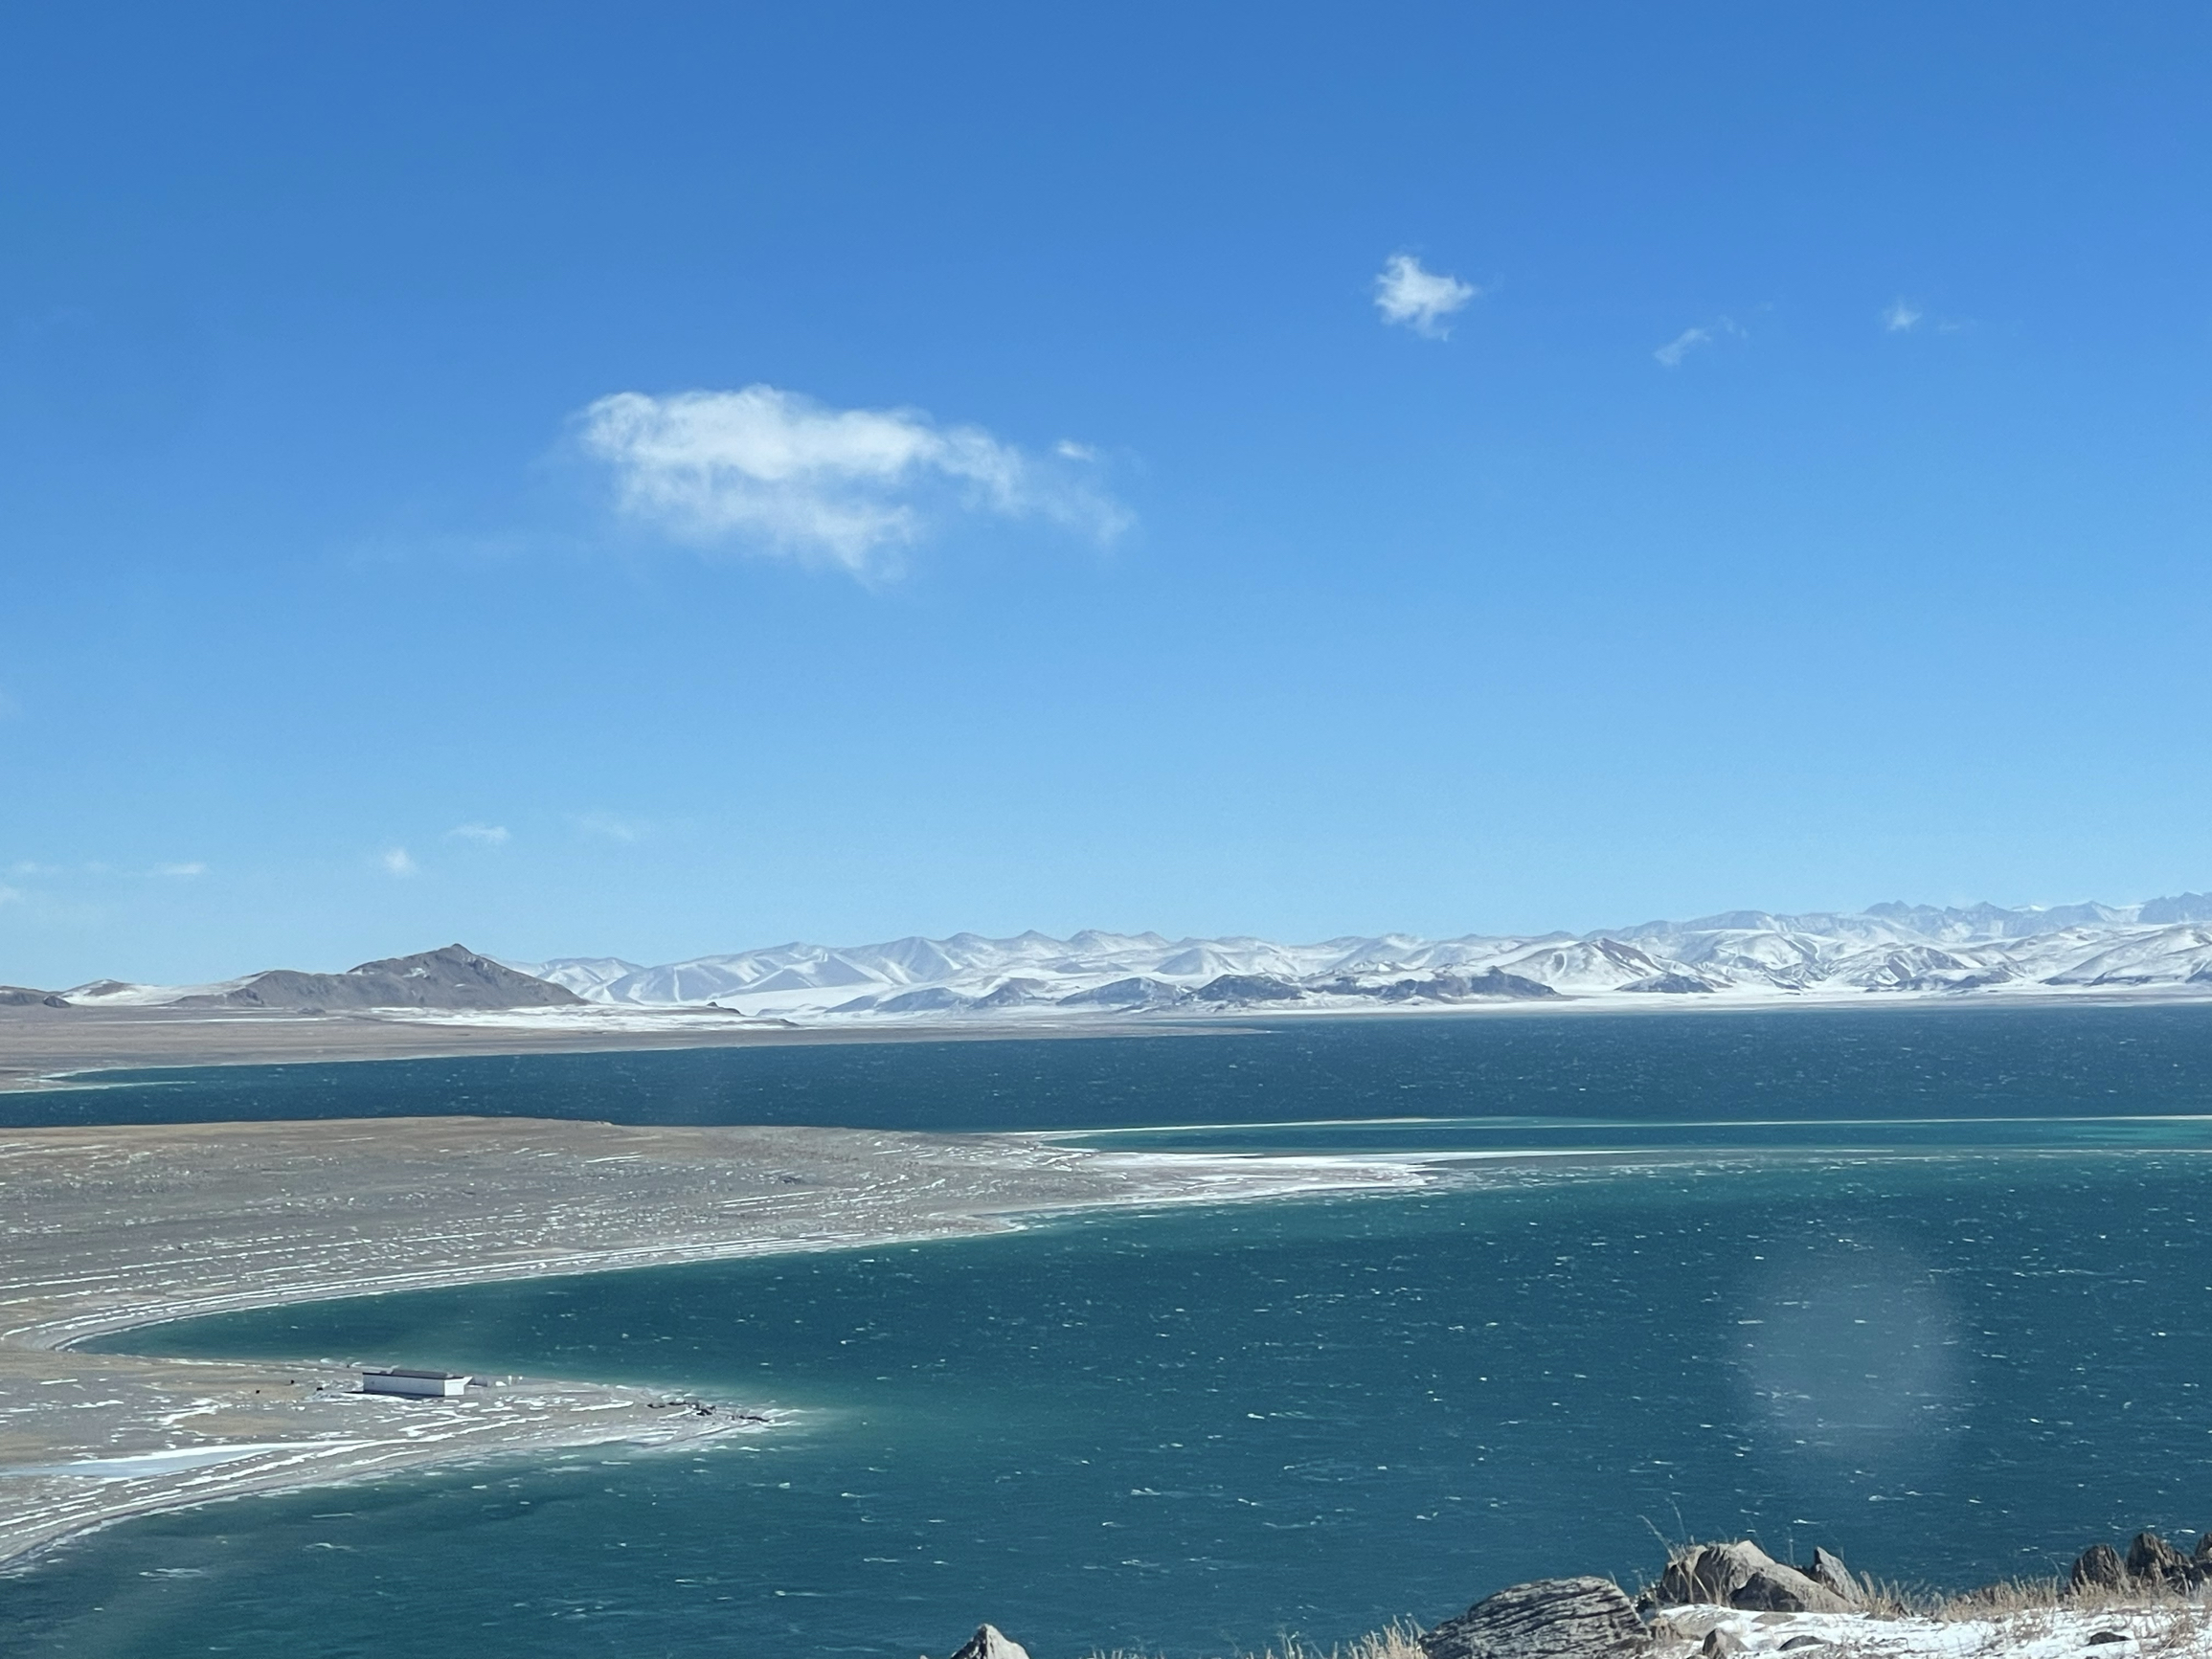 扎日南木错是西藏自治区的一个湖泊 它位于藏北高原南部，阿里地区措勤县境内。这是一个东西向构造断陷湖，